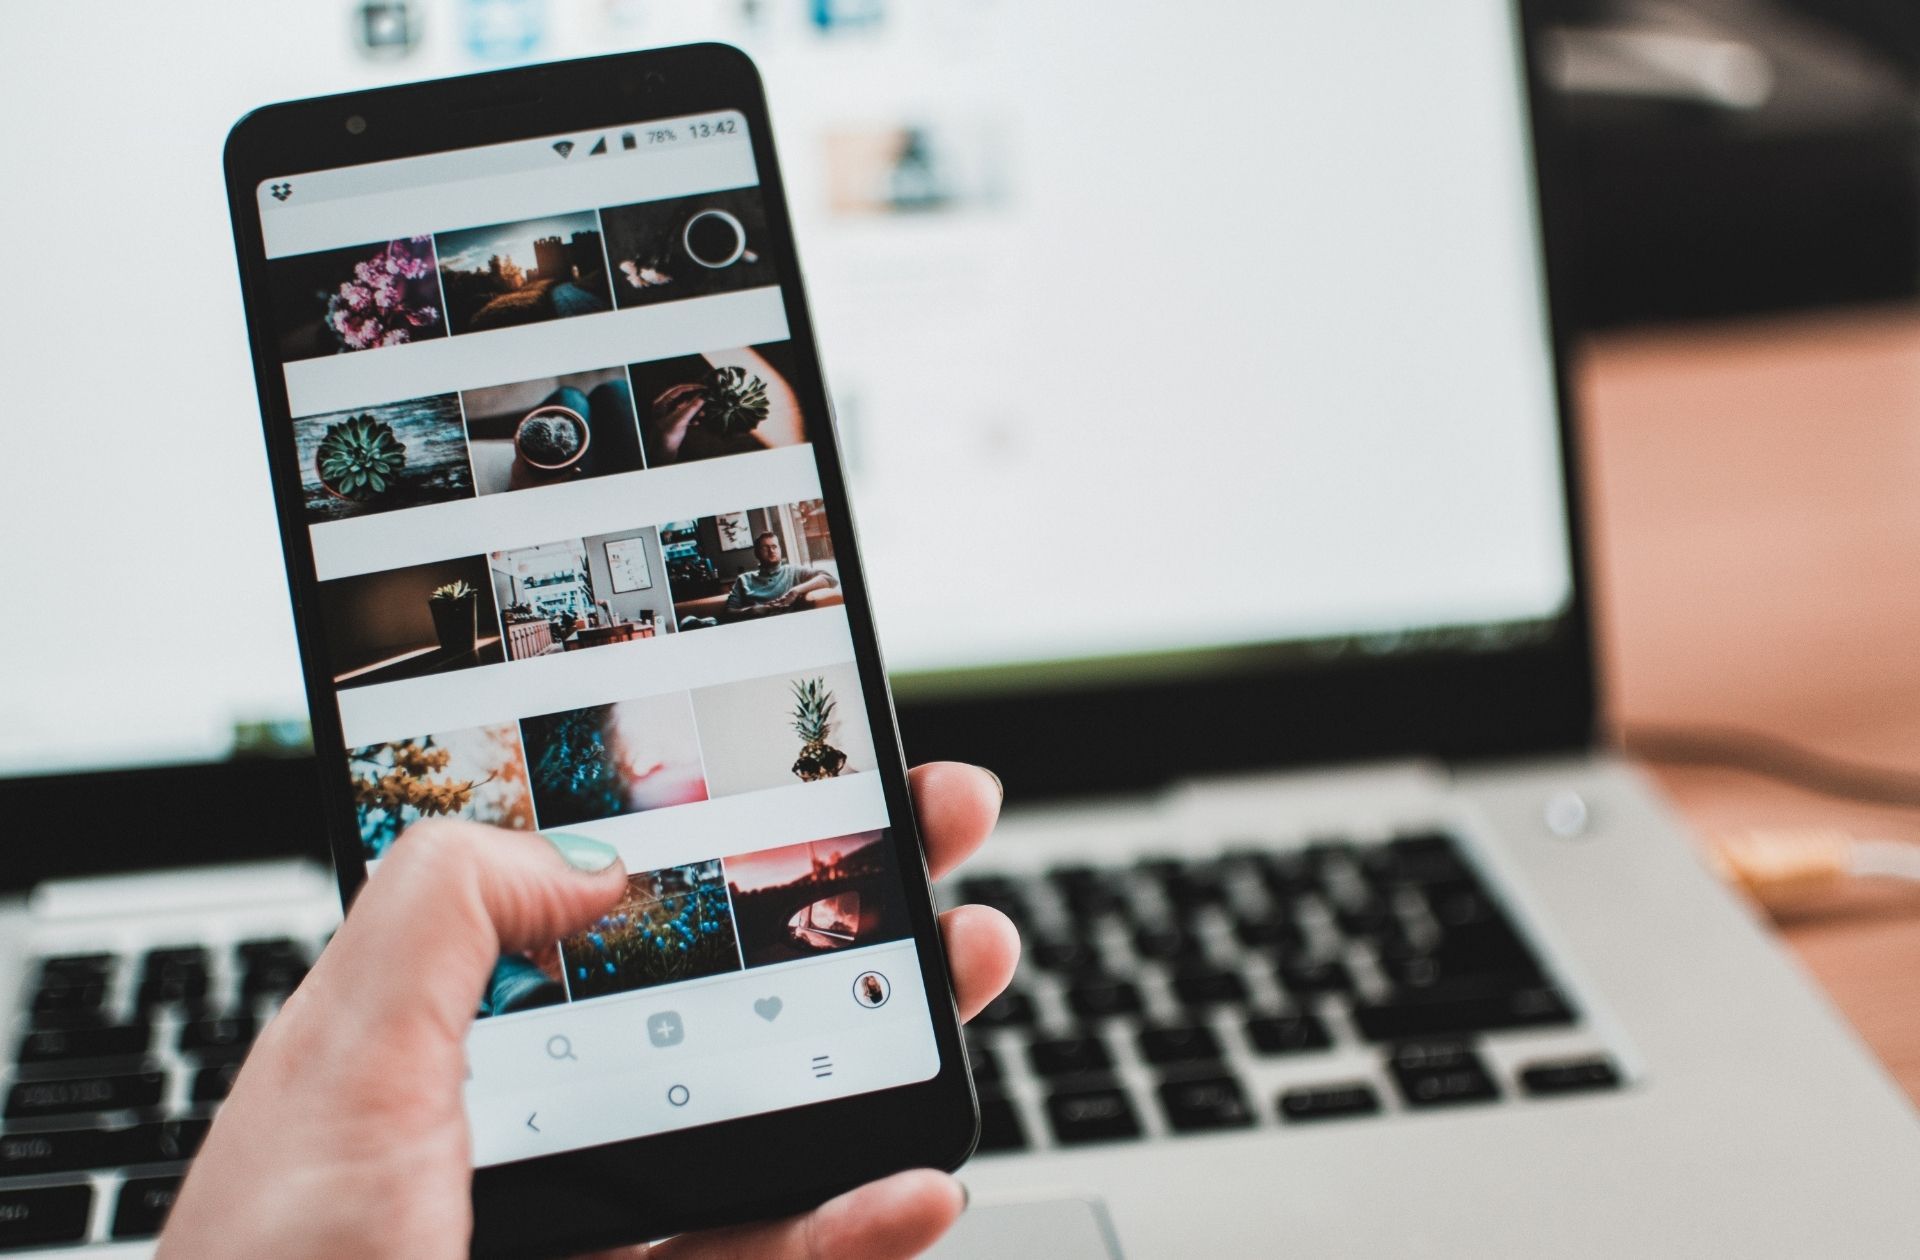 Instagram exposerait plus de 20 millions de personnes à des contenus pro-TCA d’après cette étude